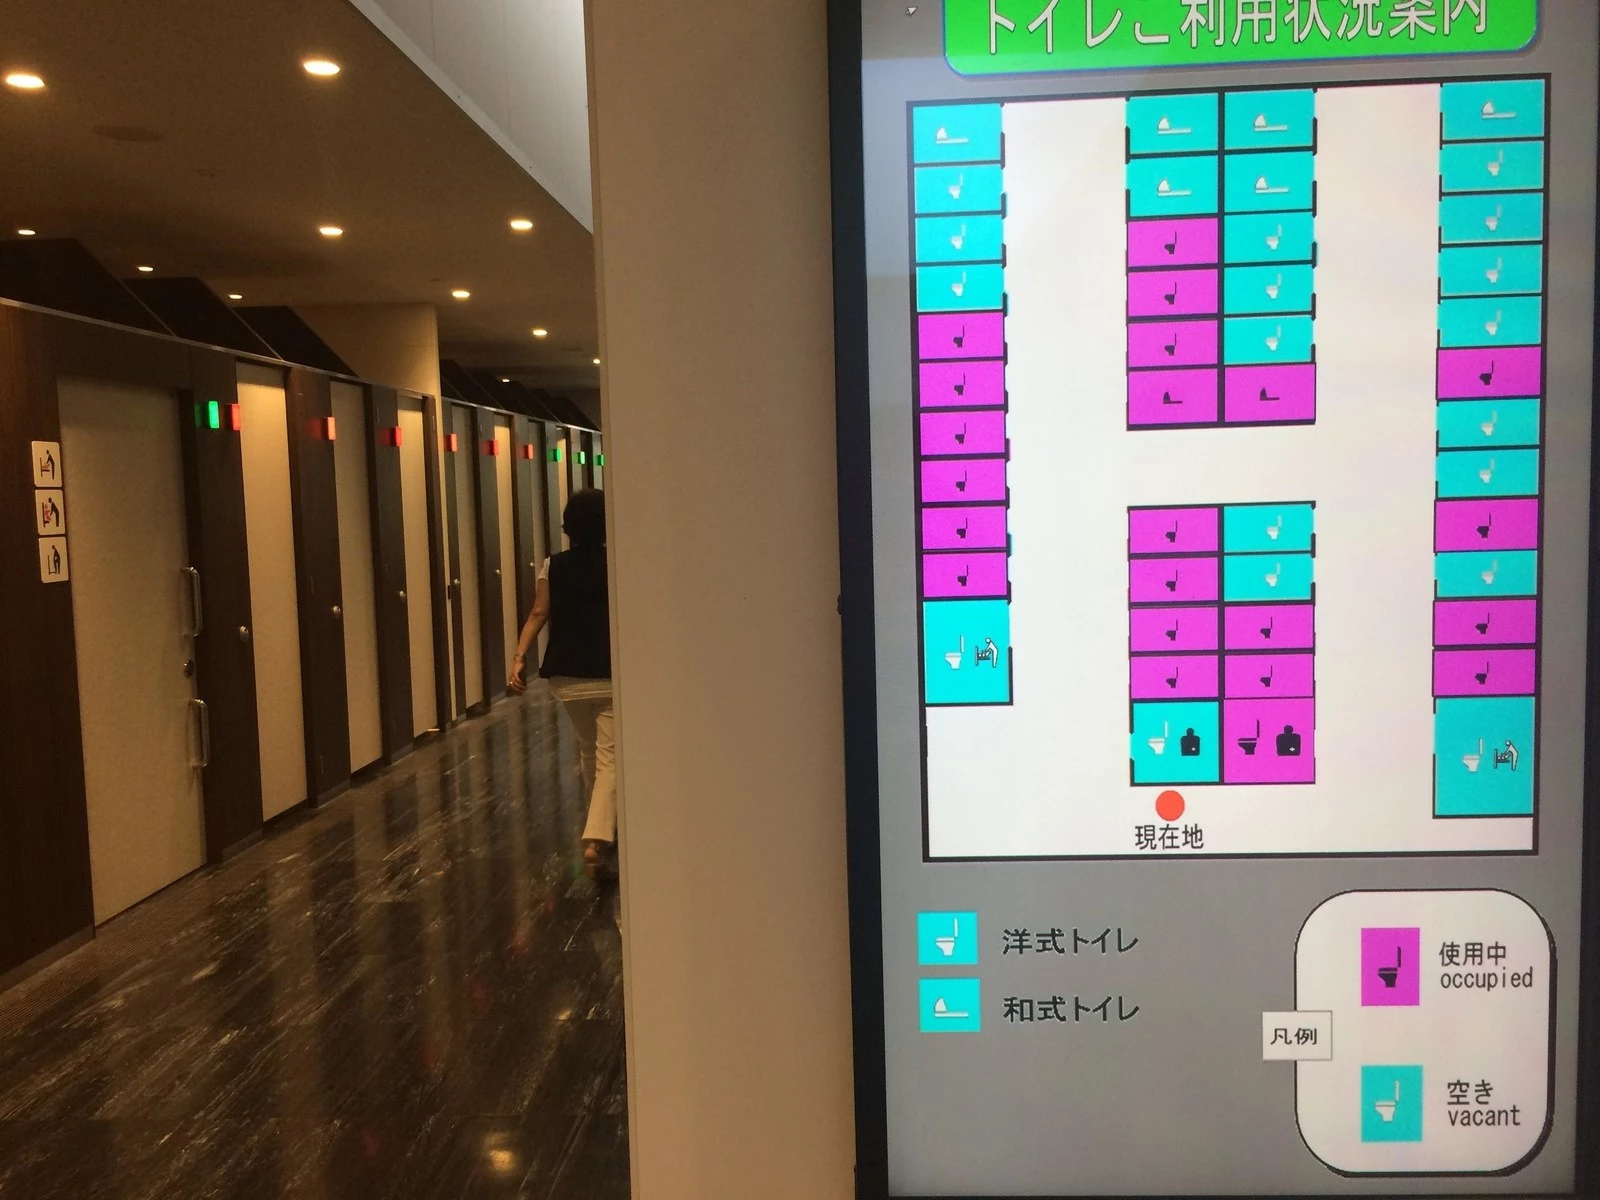 Bản đồ điện tử ở nhà vệ sinh: Một số nhà vệ sinh ở Nhật Bản có bản đồ điện tử, cho người dùng biết buồng nào đang có người dùng, và buồng nào là dạng xí bệt hay xí xổm. Điều này giúp người dùng không phải kiểm tra xem phòng nào còn trống, nhất là khi cửa đóng. Ảnh: Buzzfeed.